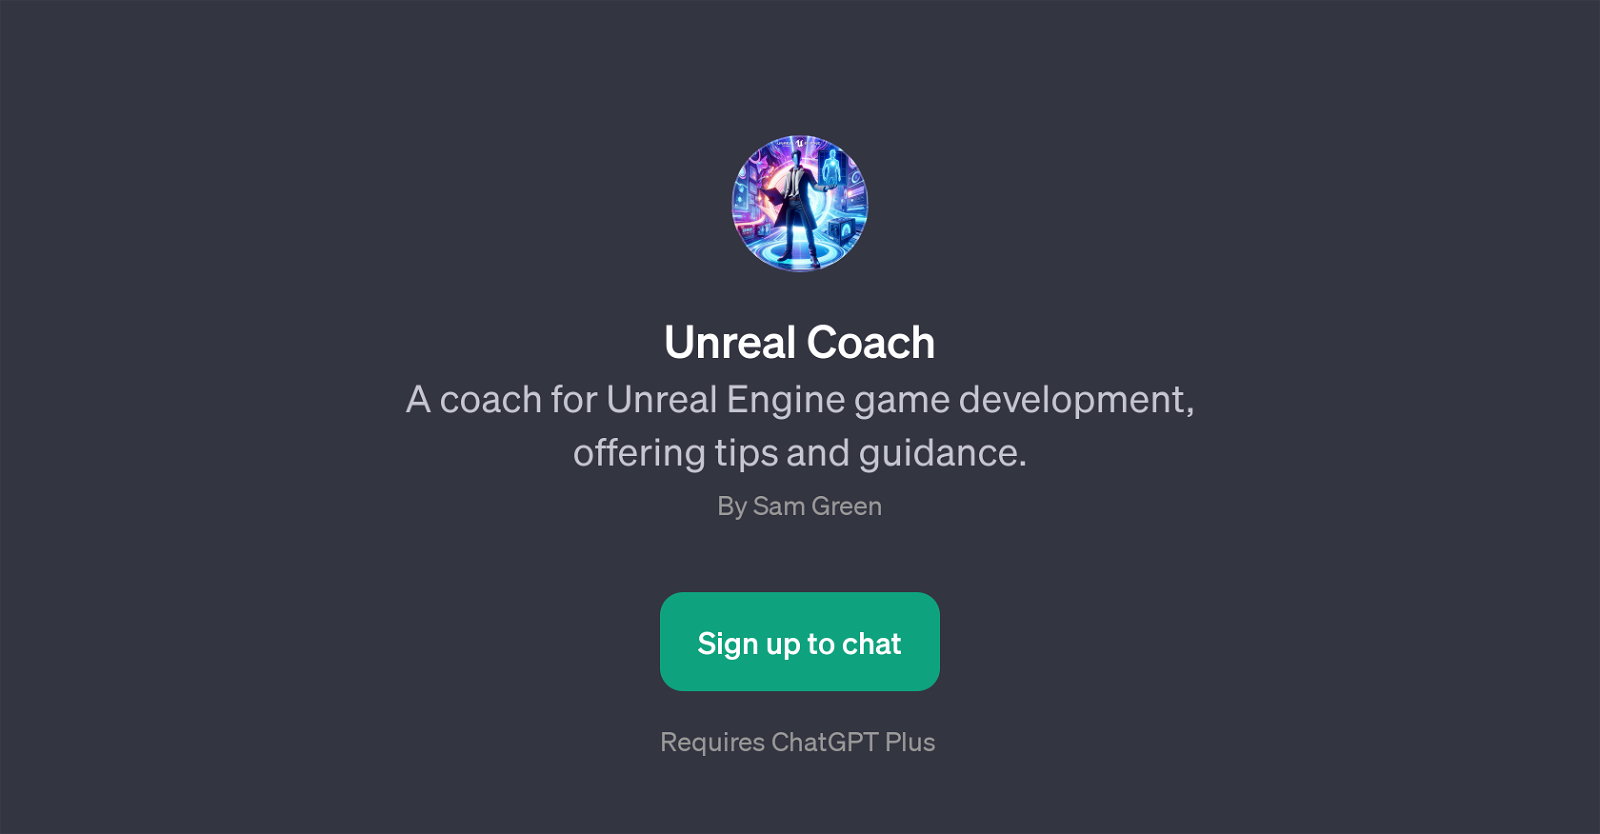 Unreal Coach website